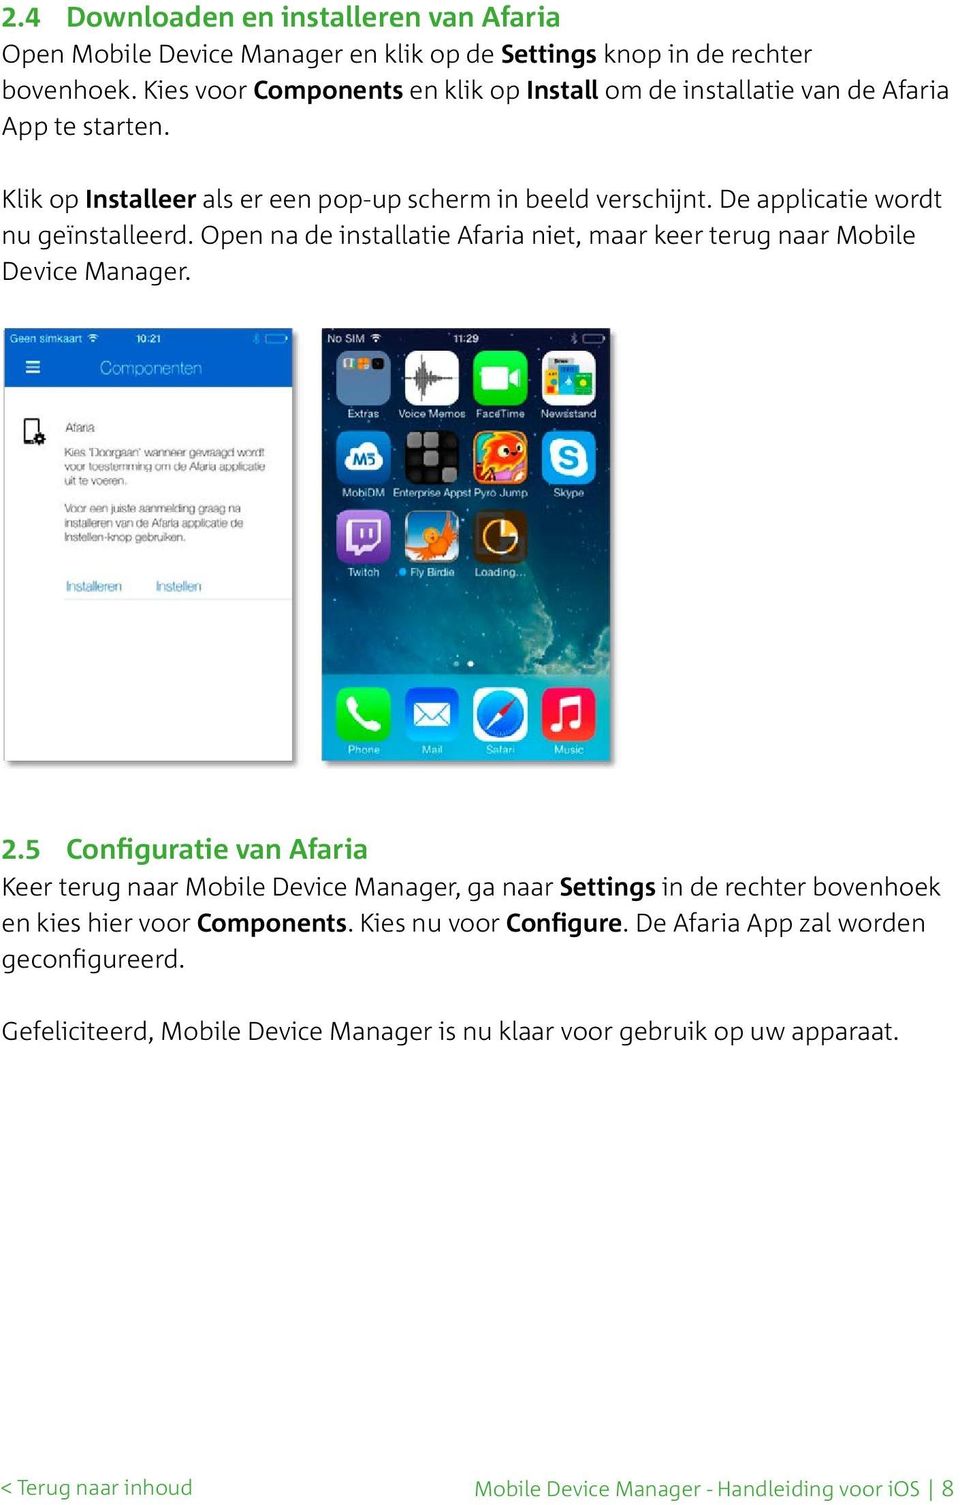 De applicatie wordt nu geïnstalleerd. Open na de installatie Afaria niet, maar keer terug naar Mobile Device Manager. 2.